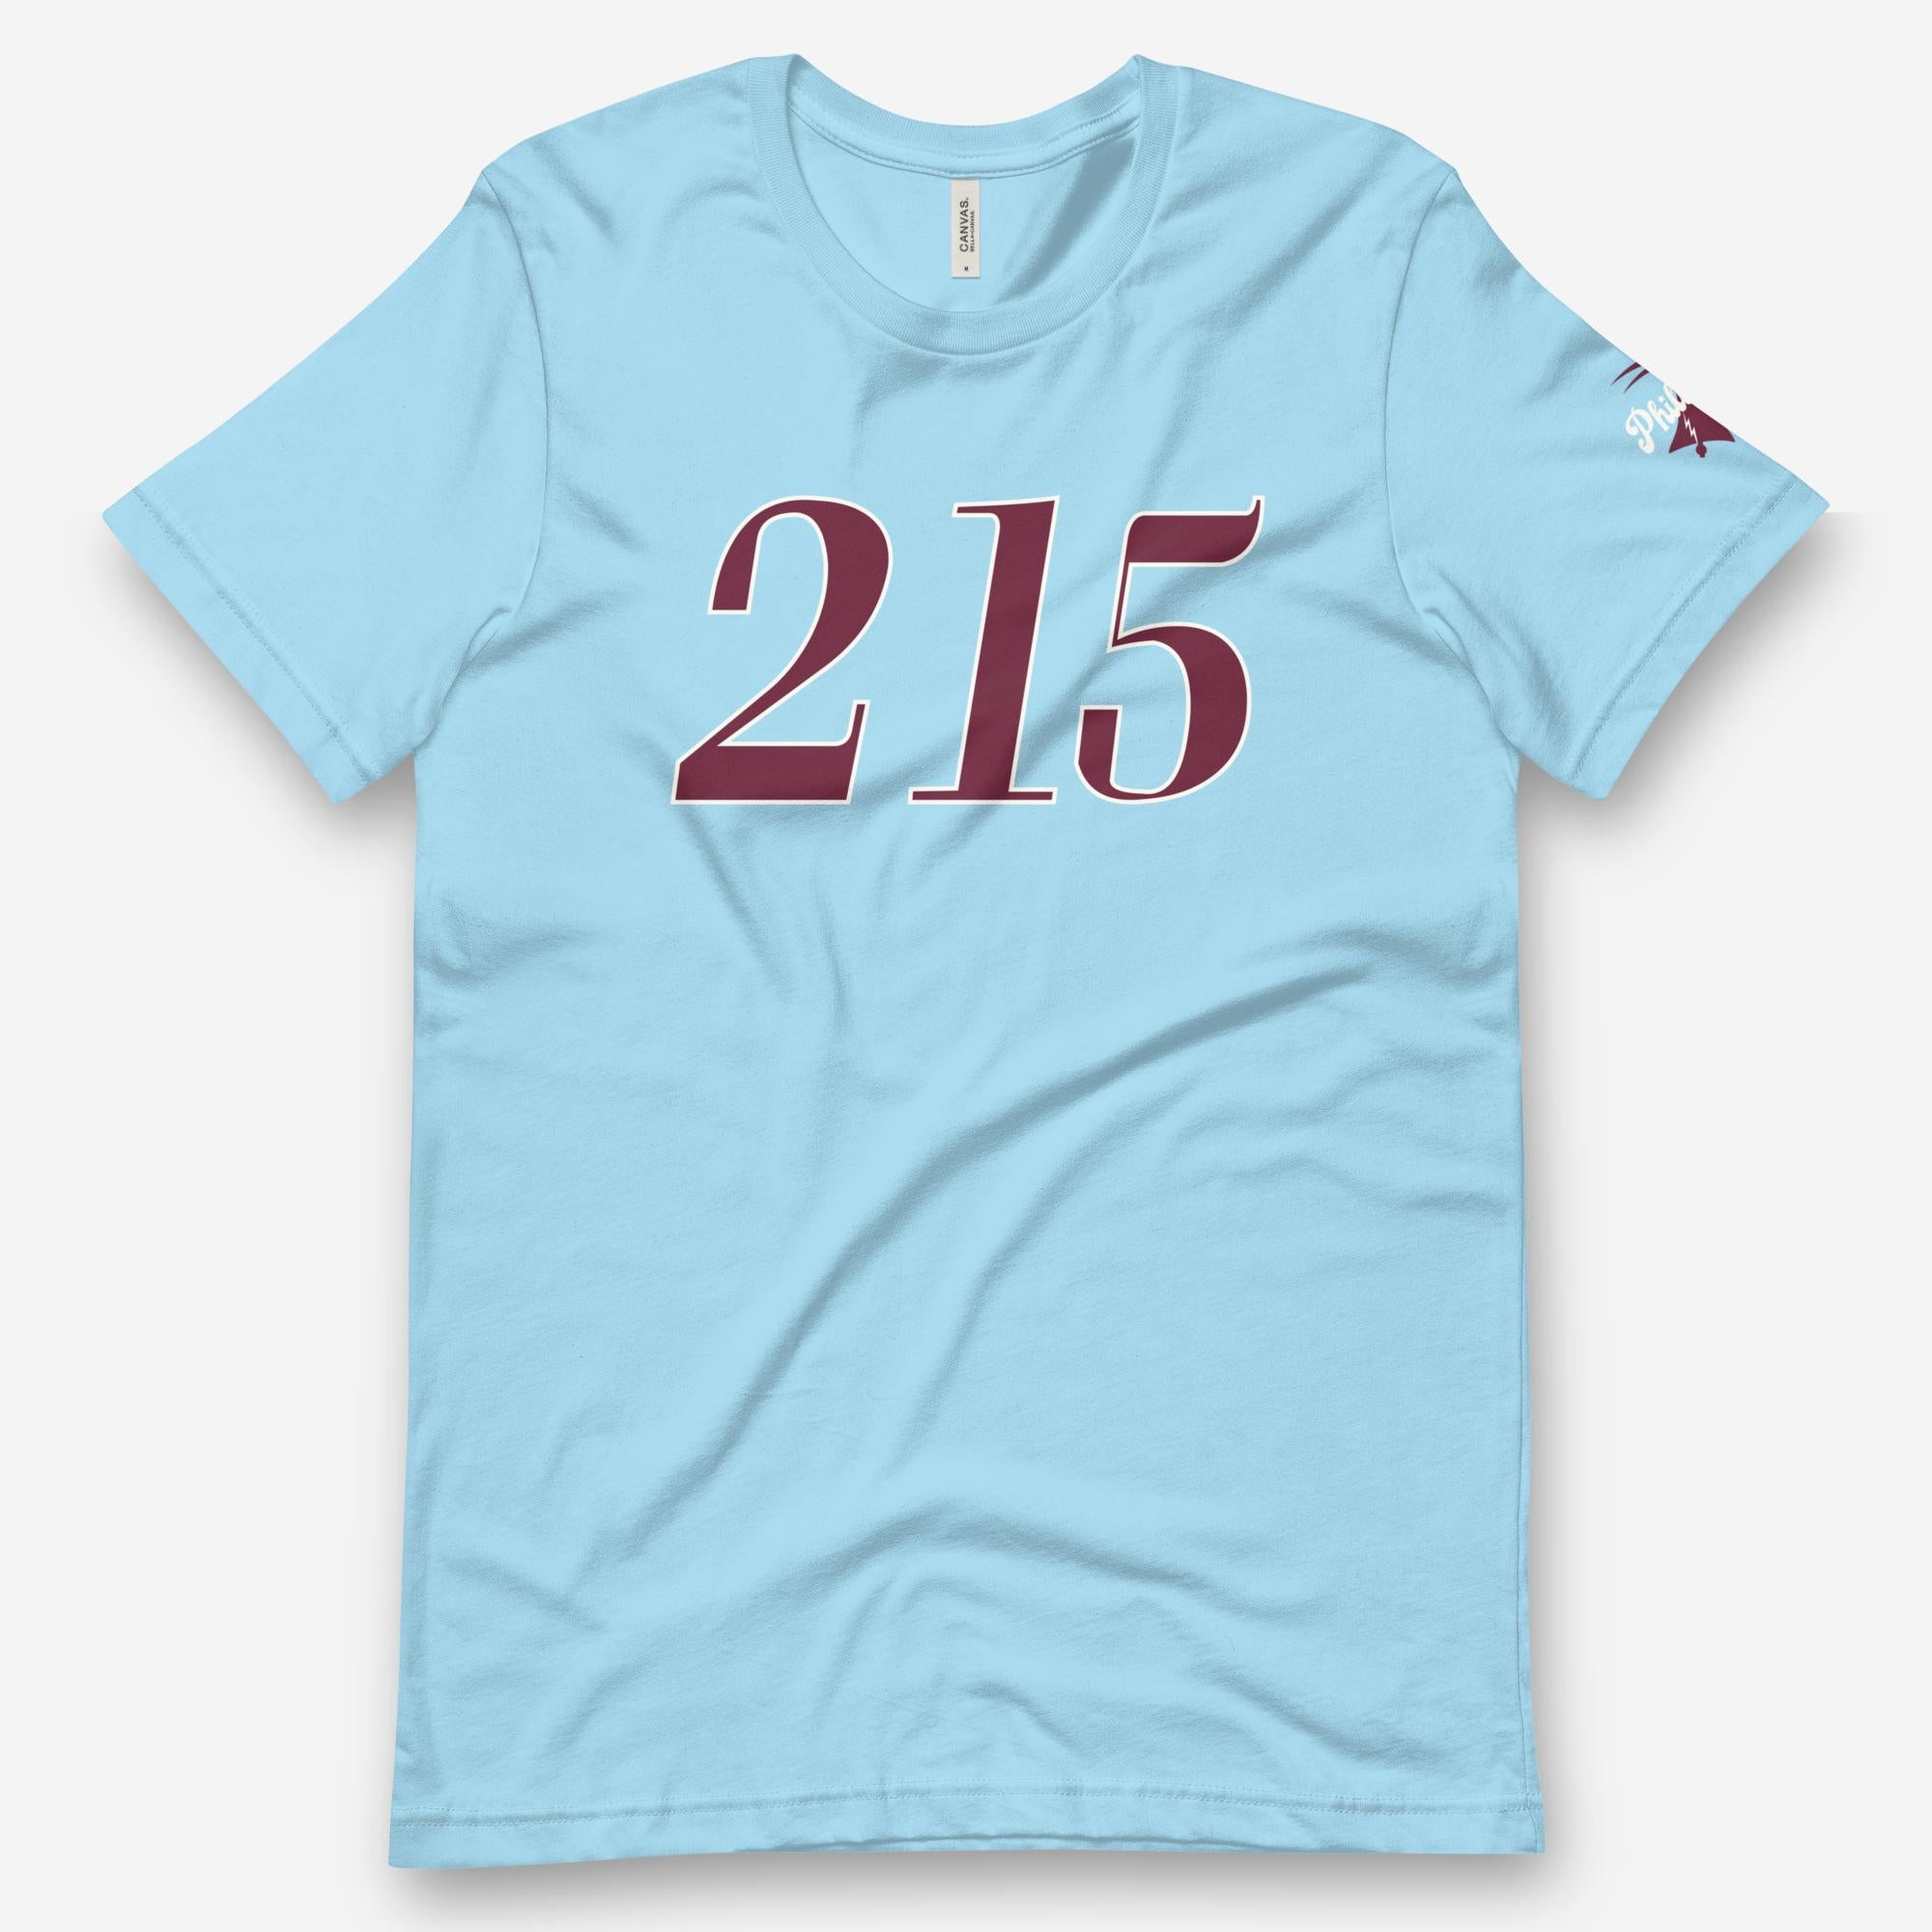 "215 Liberty" Tee